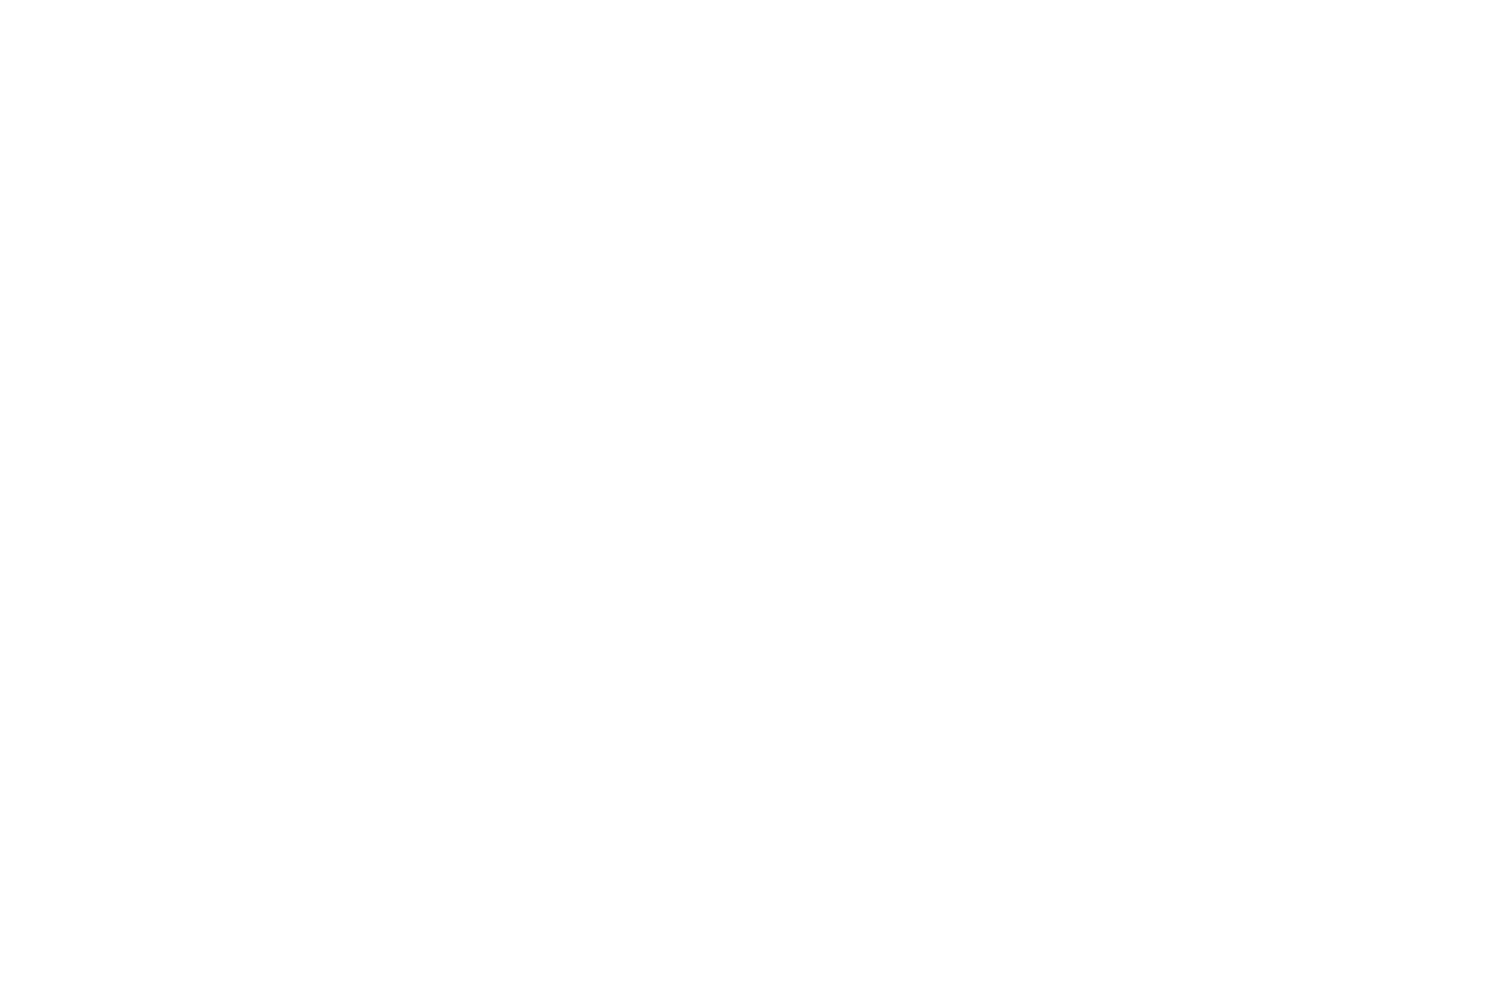 Chris Stedman Celebrant